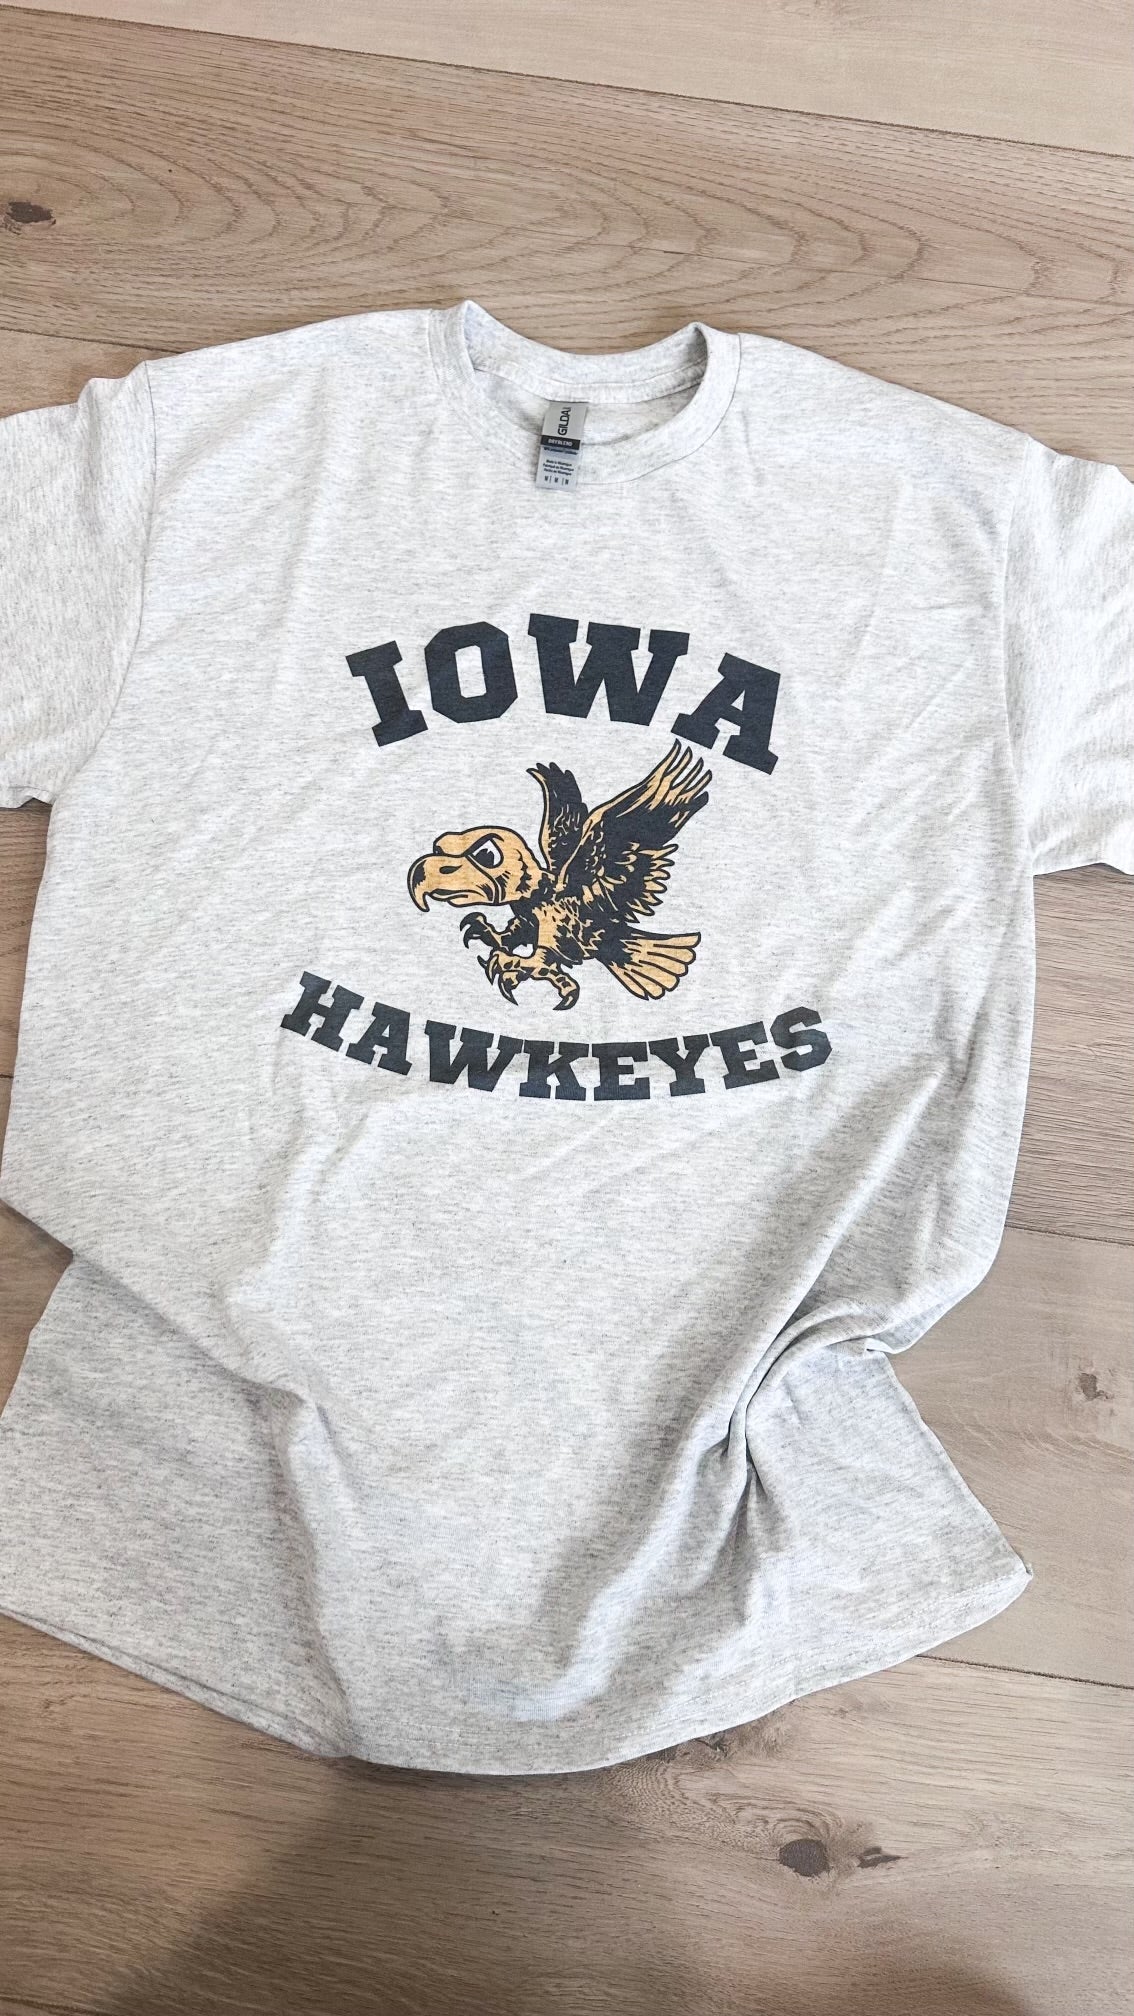 Iowa Hawkeyes Graphic Tee